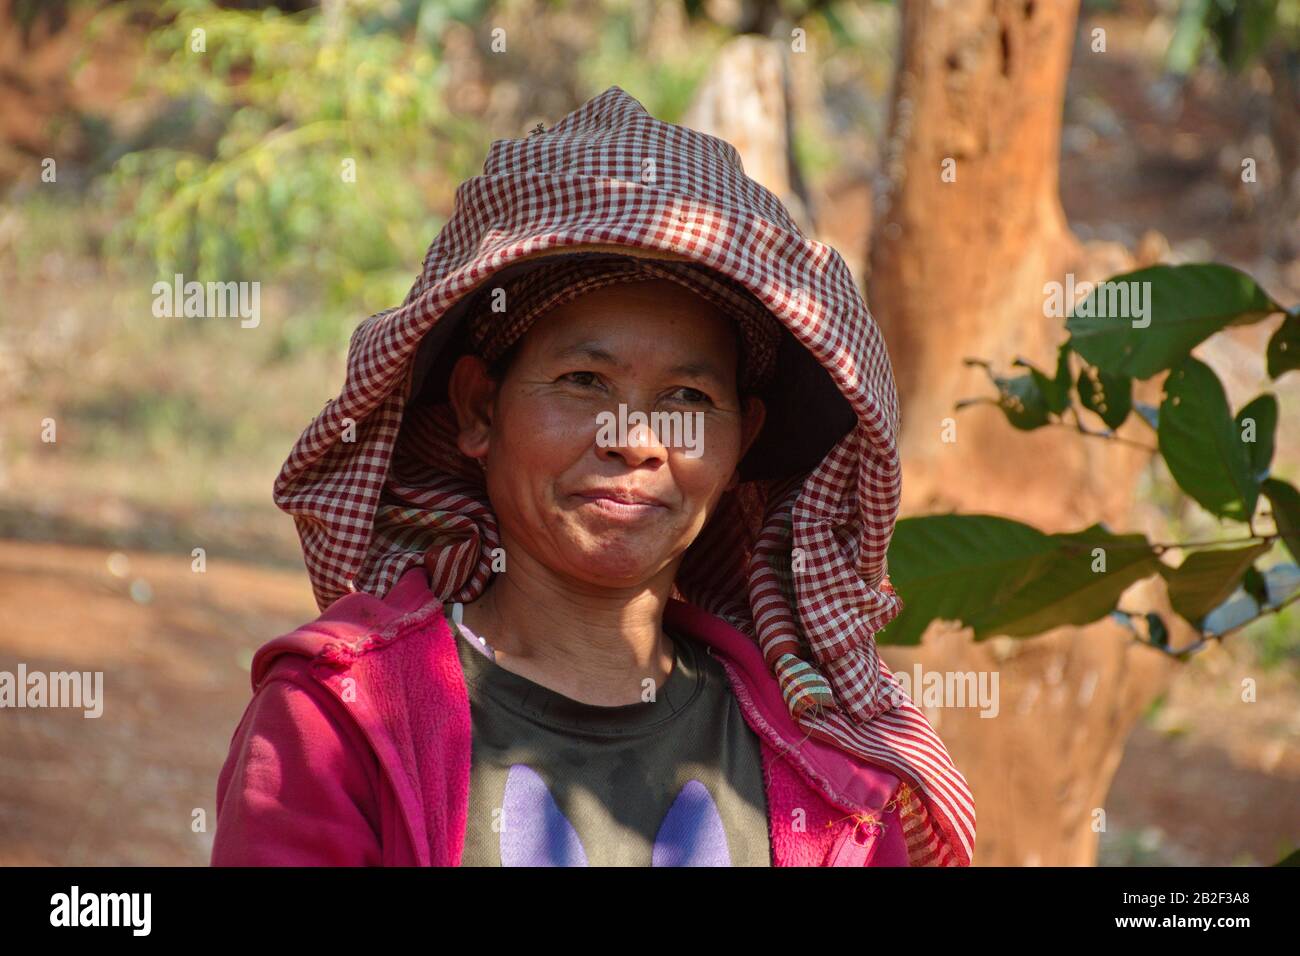 Portrait de la femme cambodgienne avec chapeau dans la nature Banque D'Images